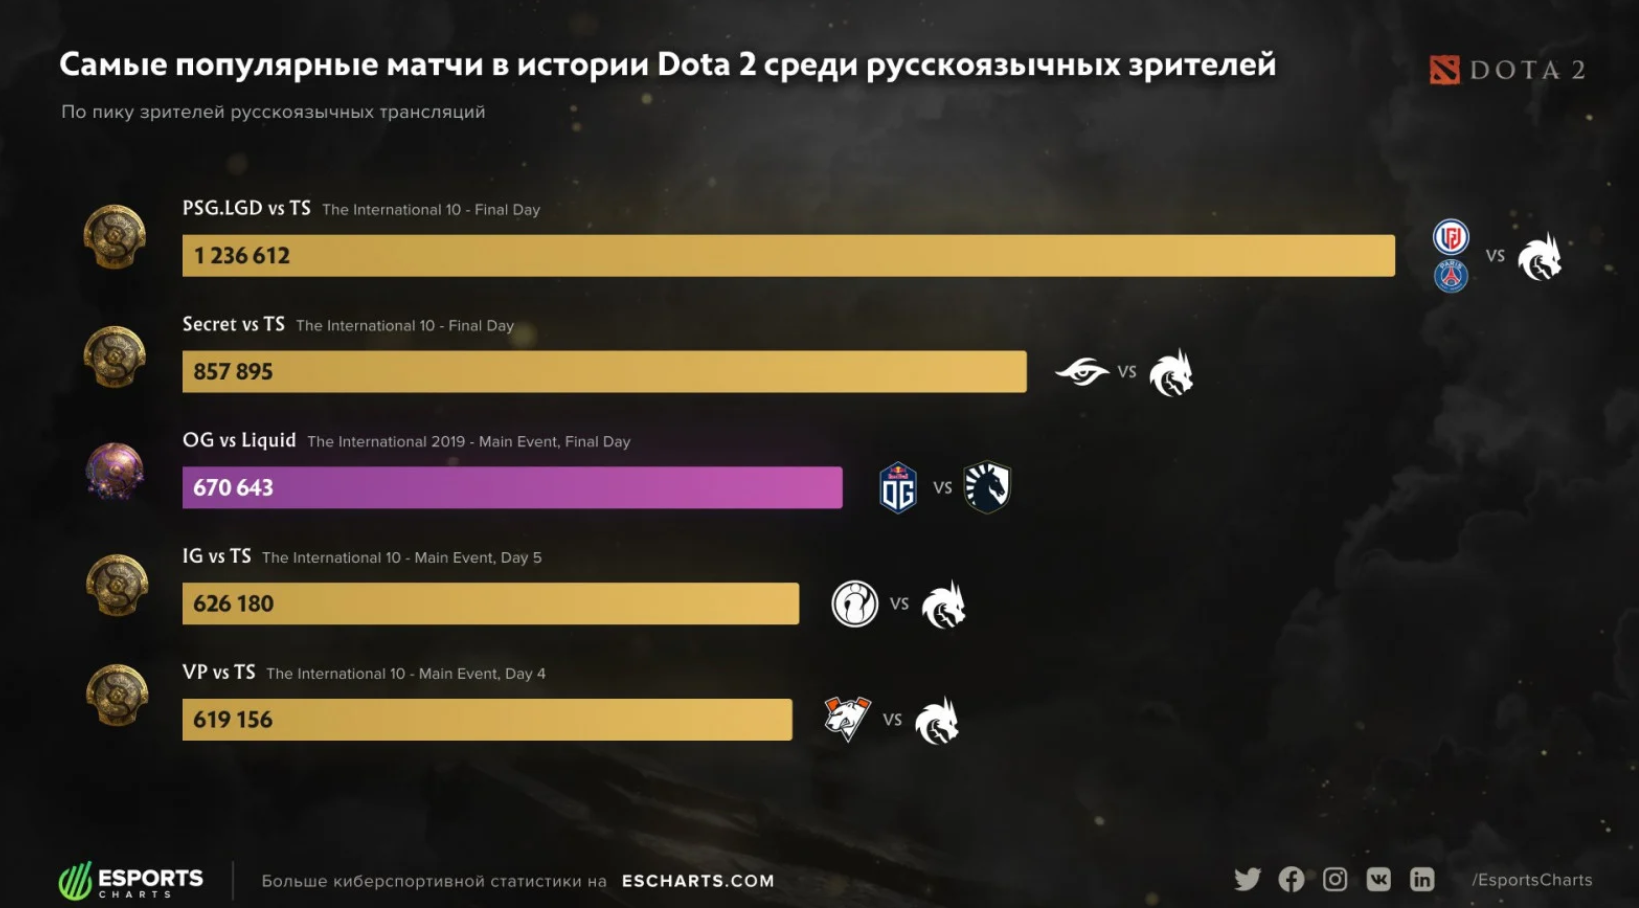 Самые популярные матчи в истории Dota 2 среди русскоязычных зрителей